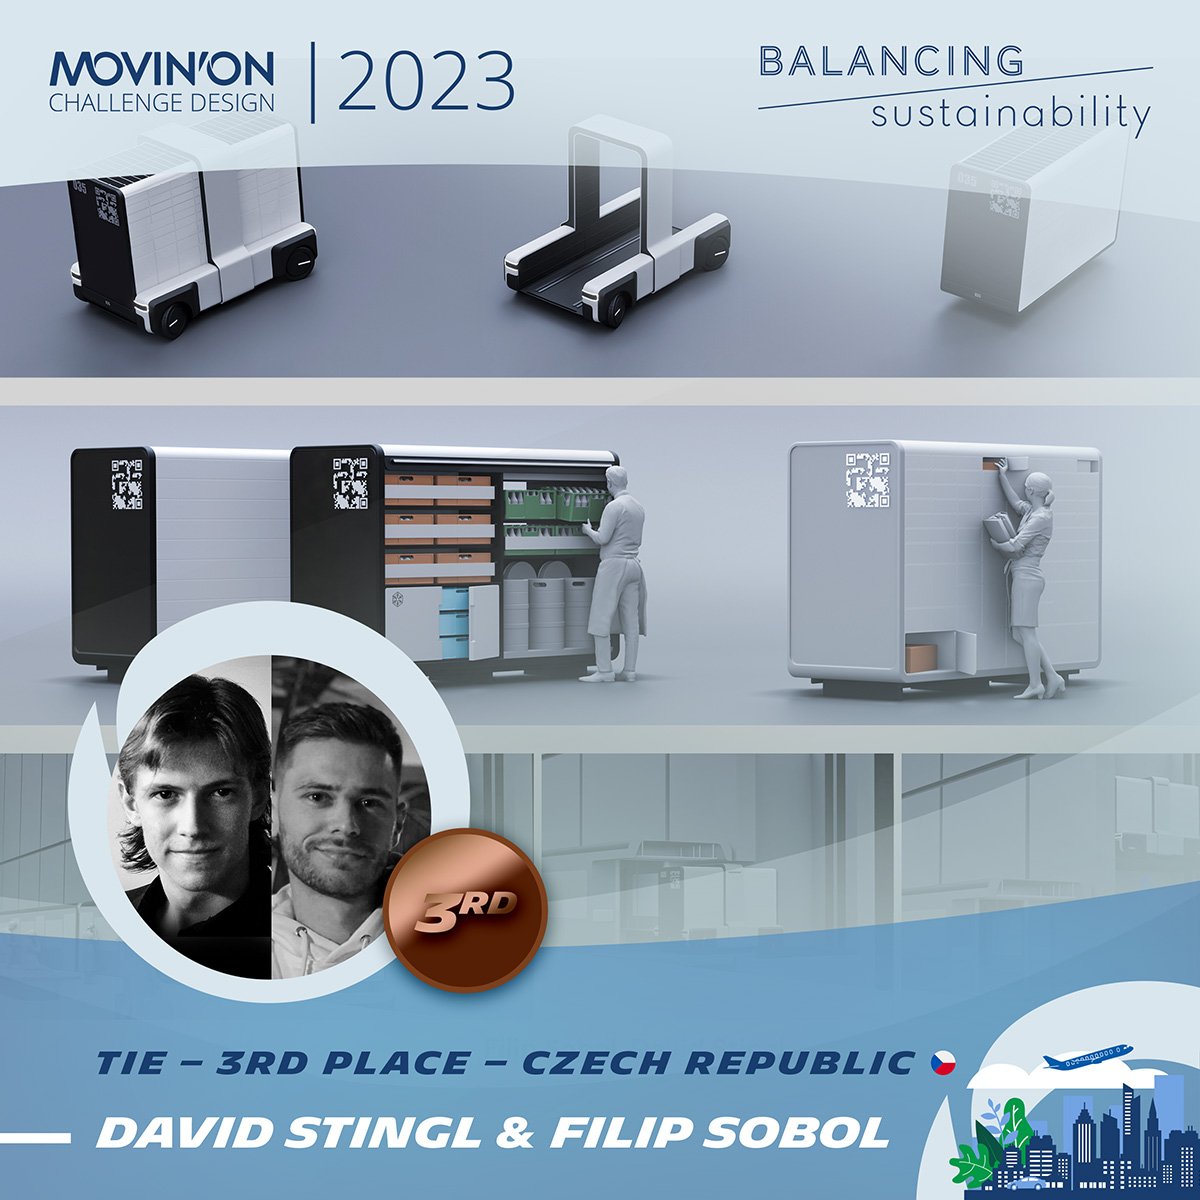 Obrovský úspěch studentů UMPRUM Filipa Sobola a Davida Stingla v mezinárodní soutěži Michelin Movin'On 2023